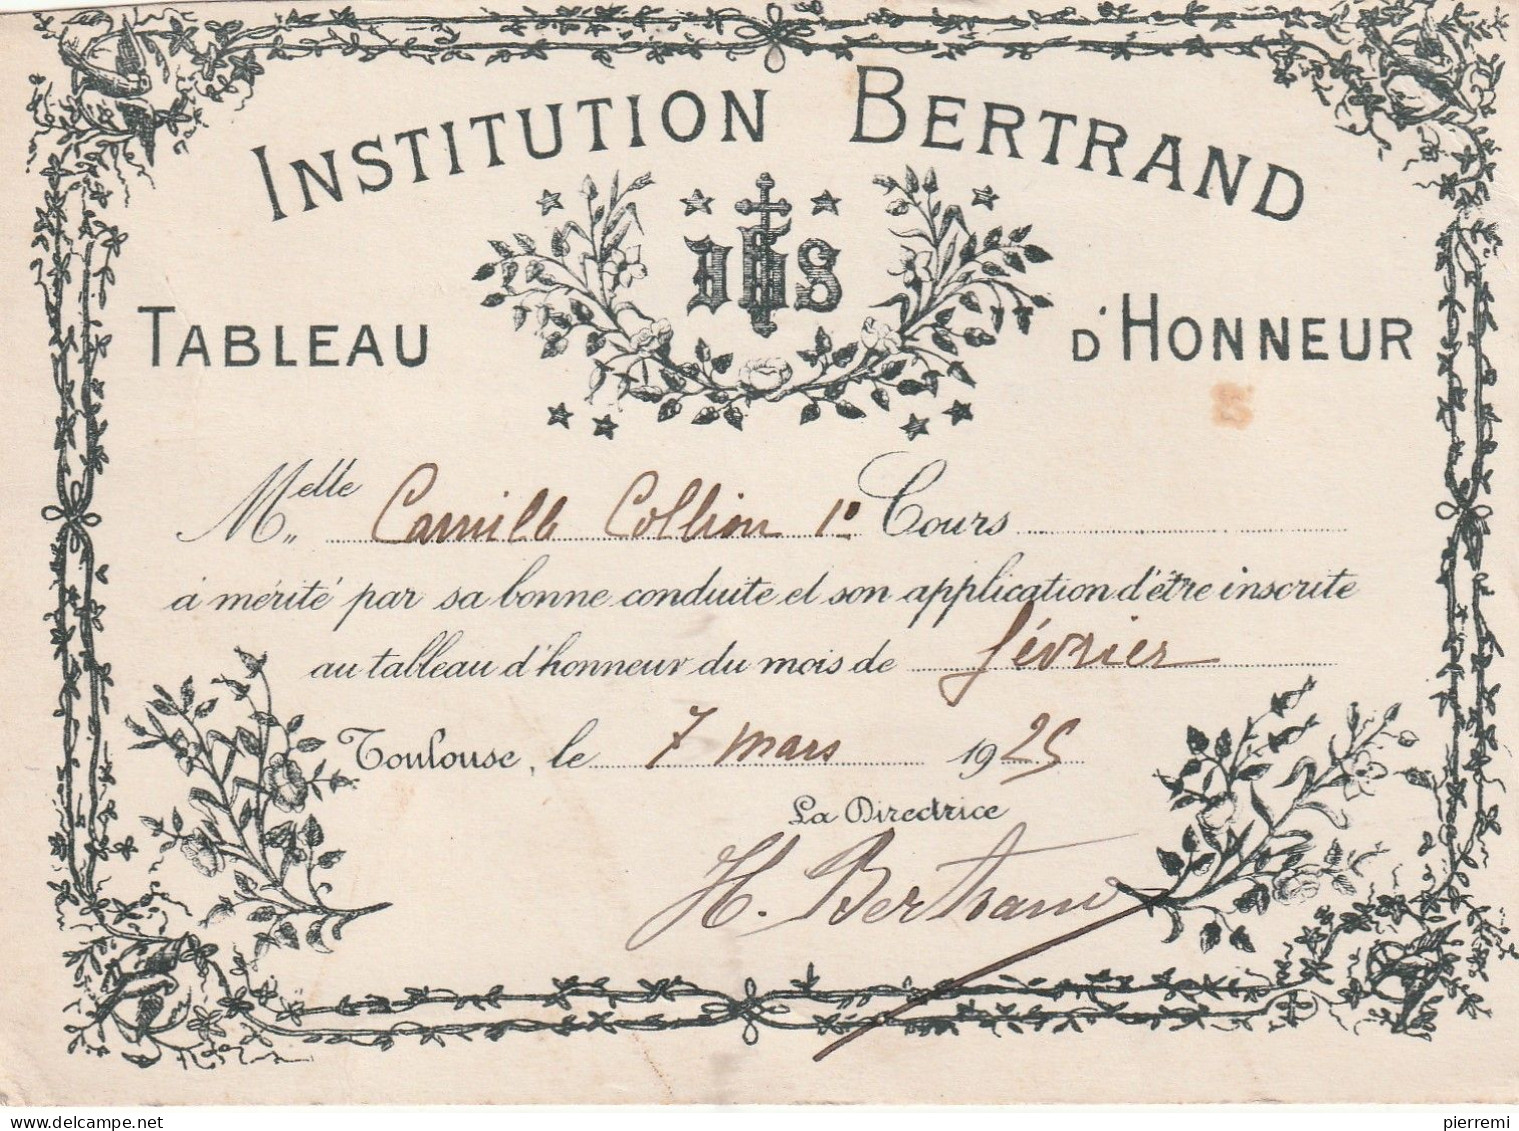 INSTITUTION BERTRAND   TABLEAU D HONNEUR  1925  TOULOUSE - Diplômes & Bulletins Scolaires